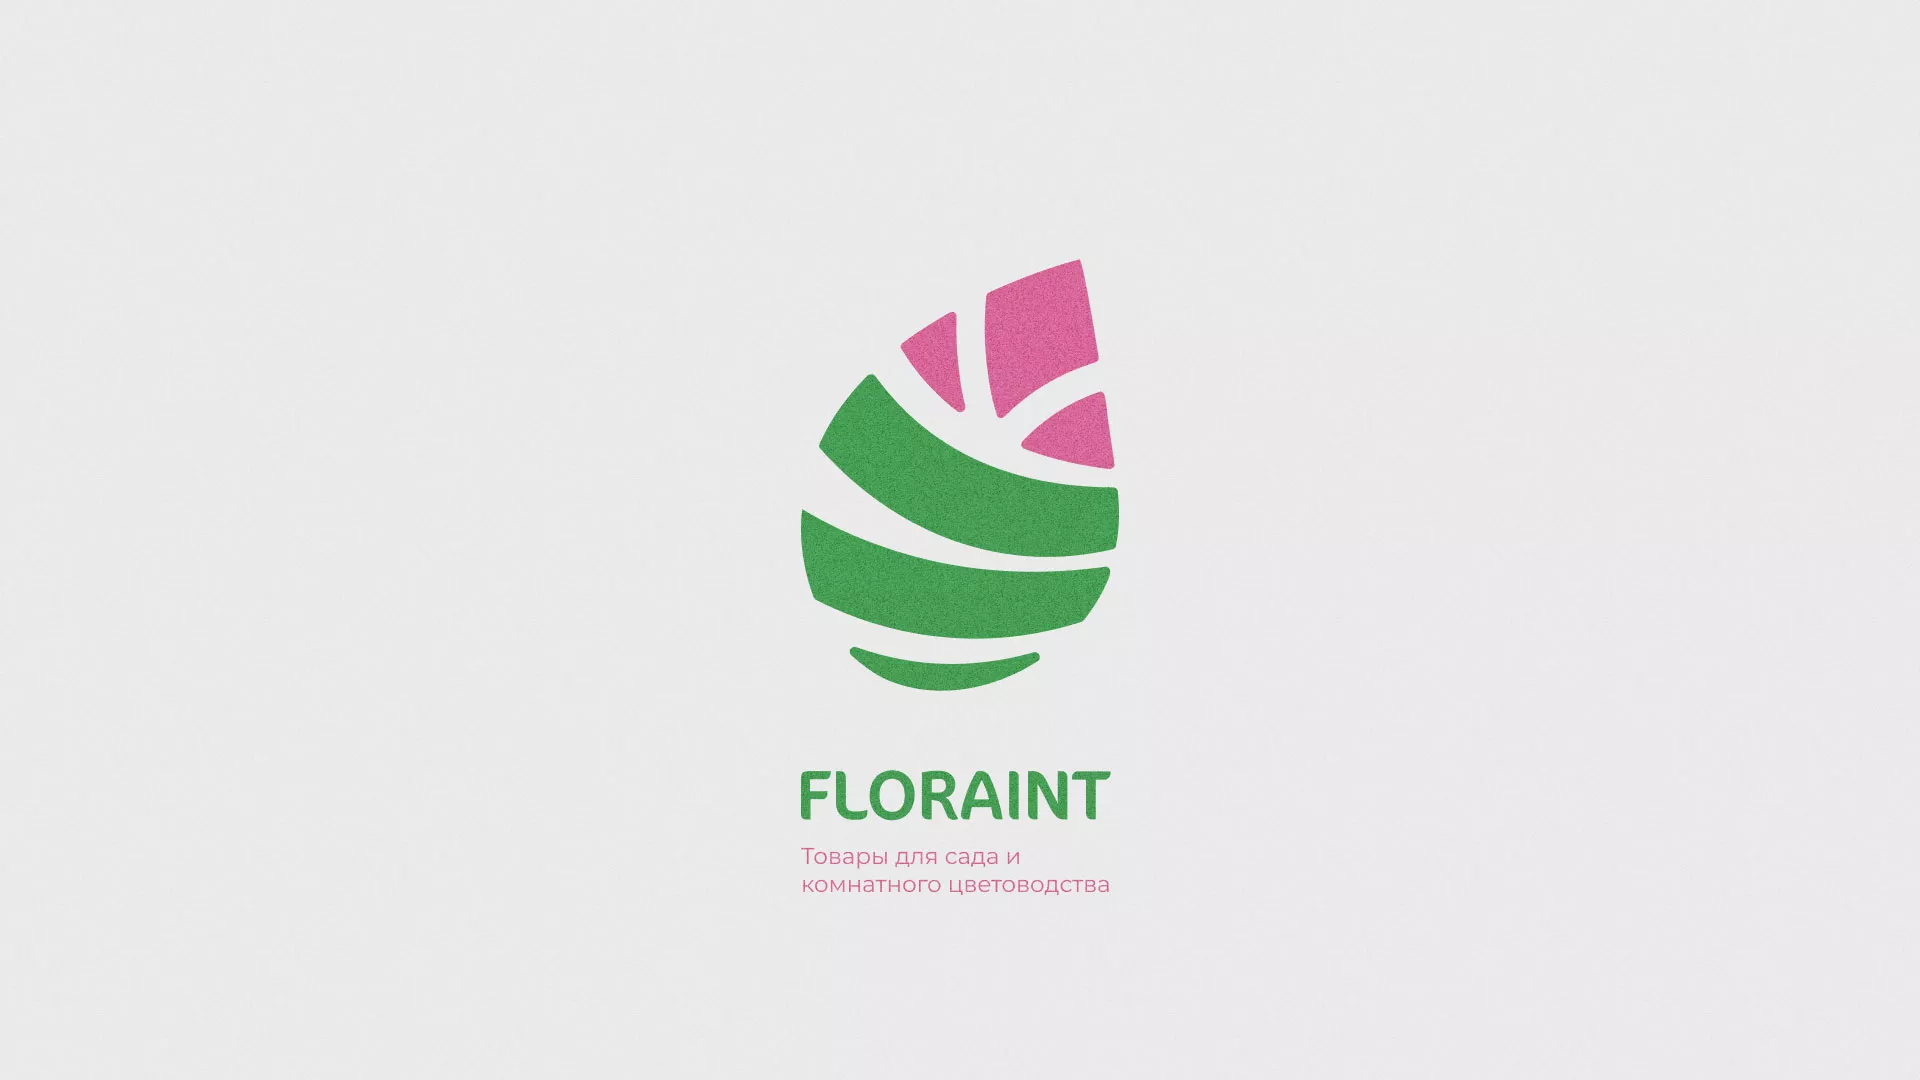 Разработка оформления профиля Instagram для магазина «Floraint» в Костомукше